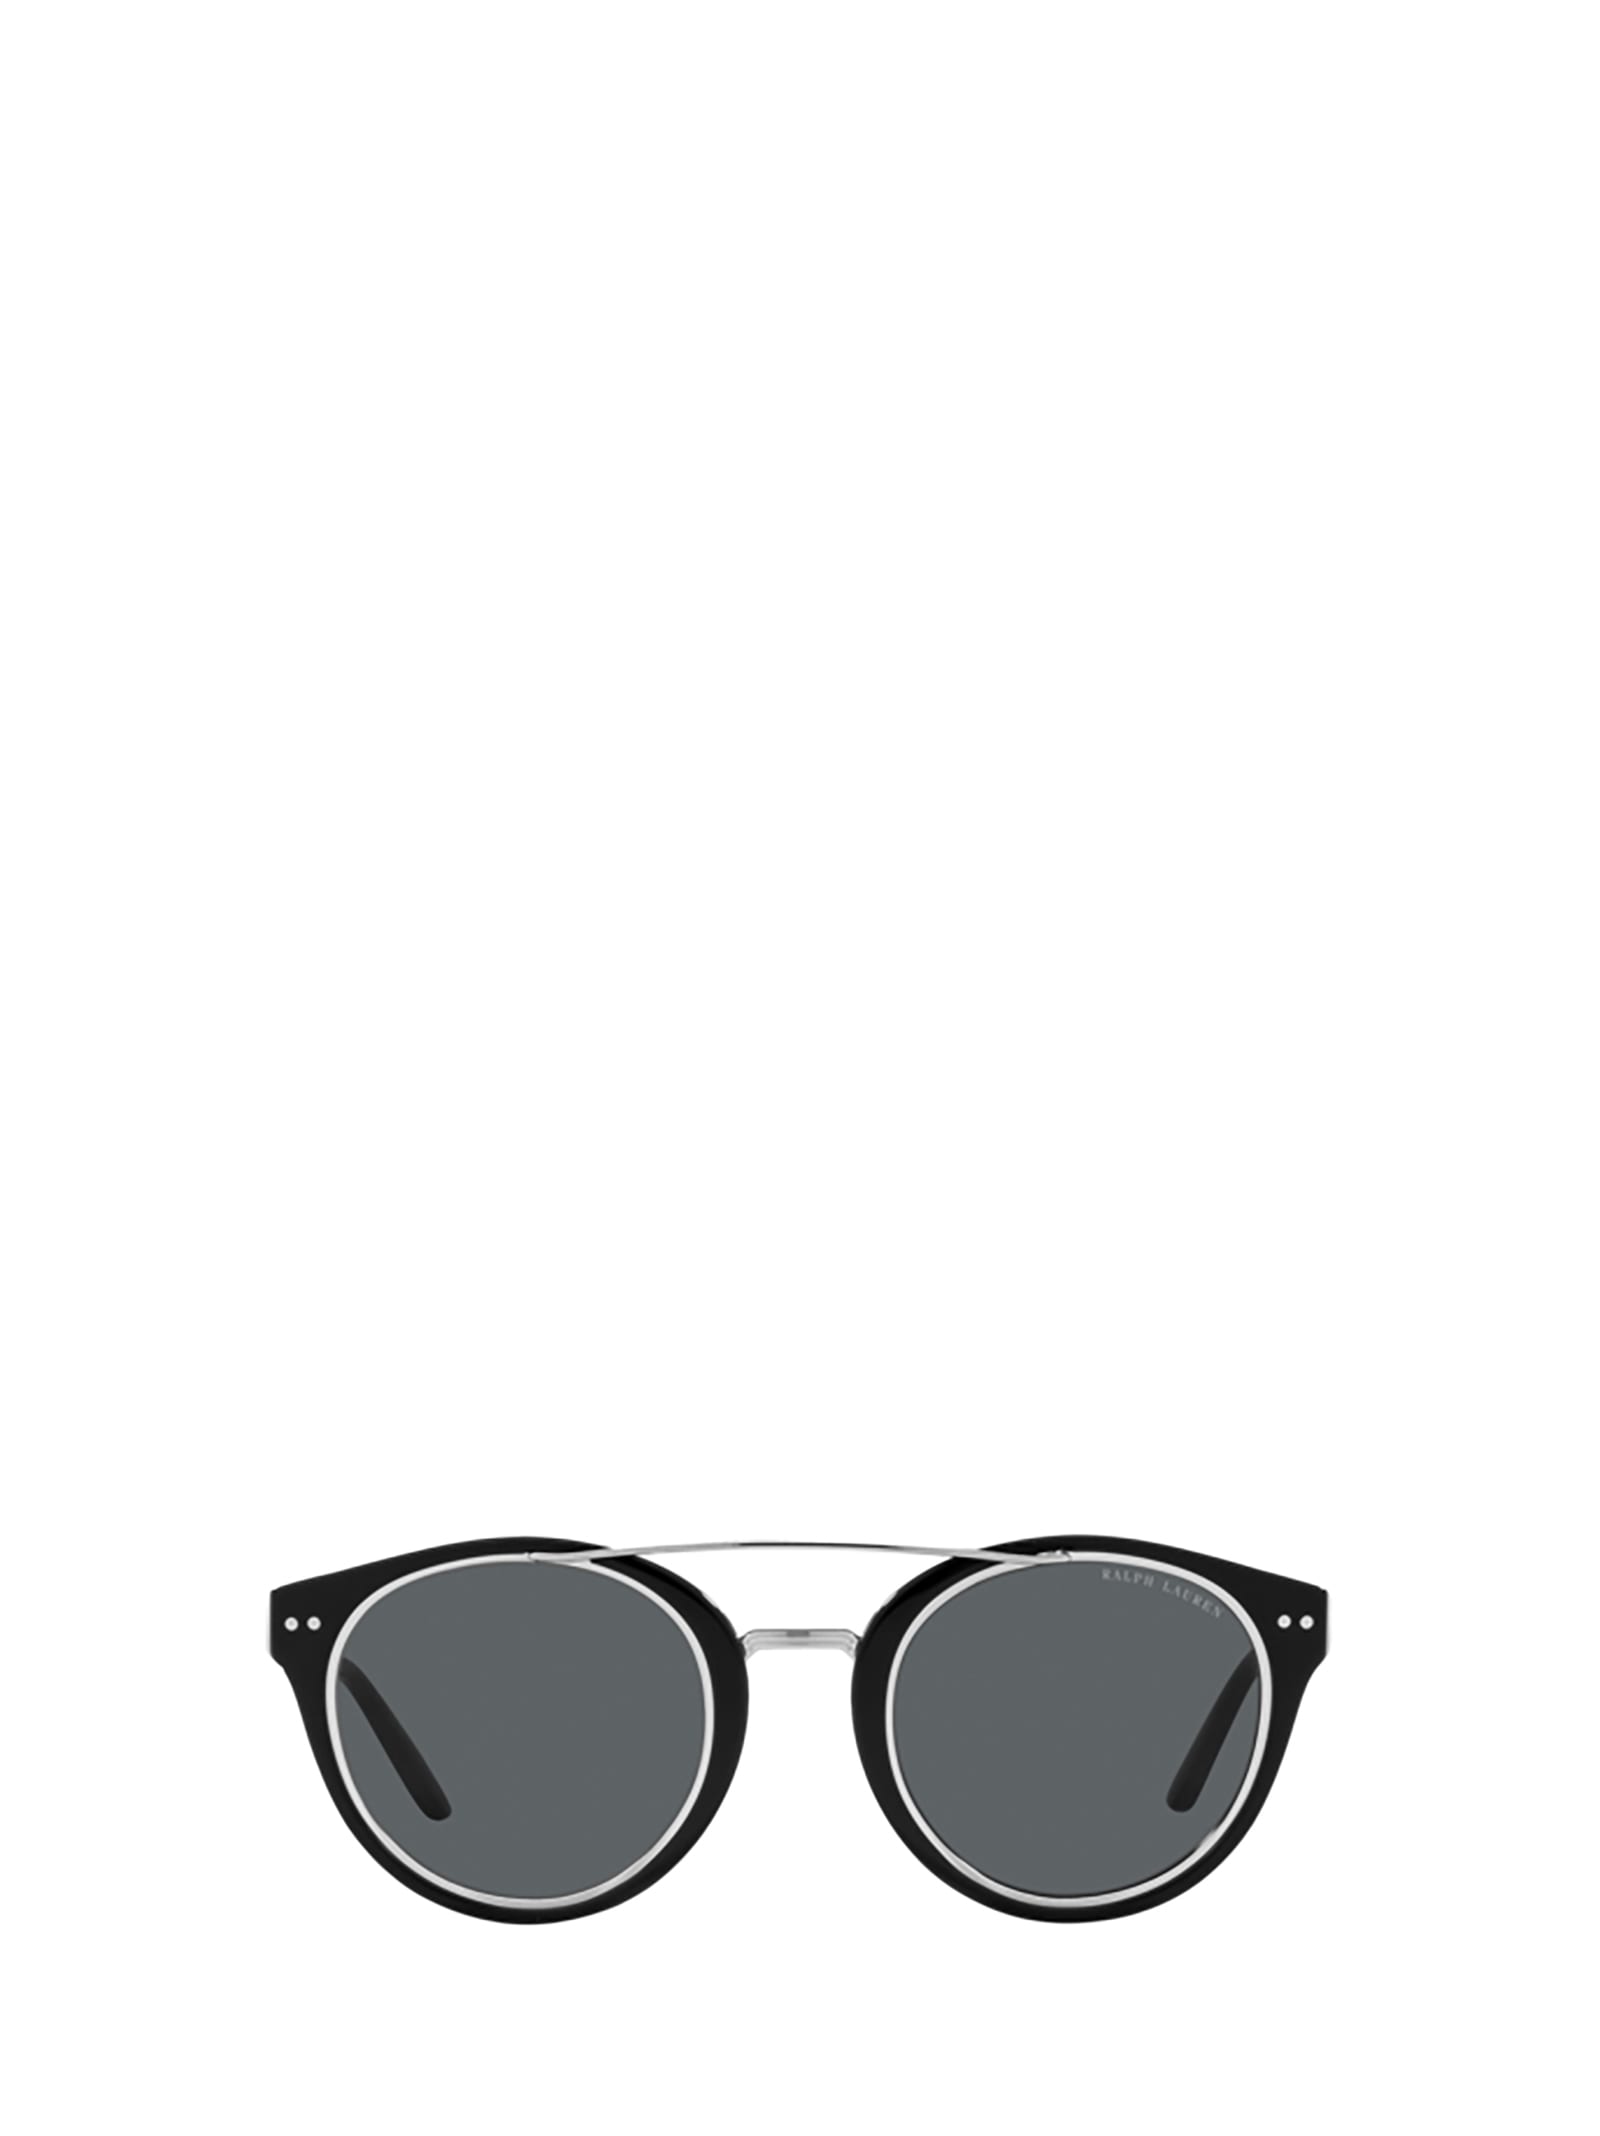 Ralph Lauren Rl8210 Black Sunglasses